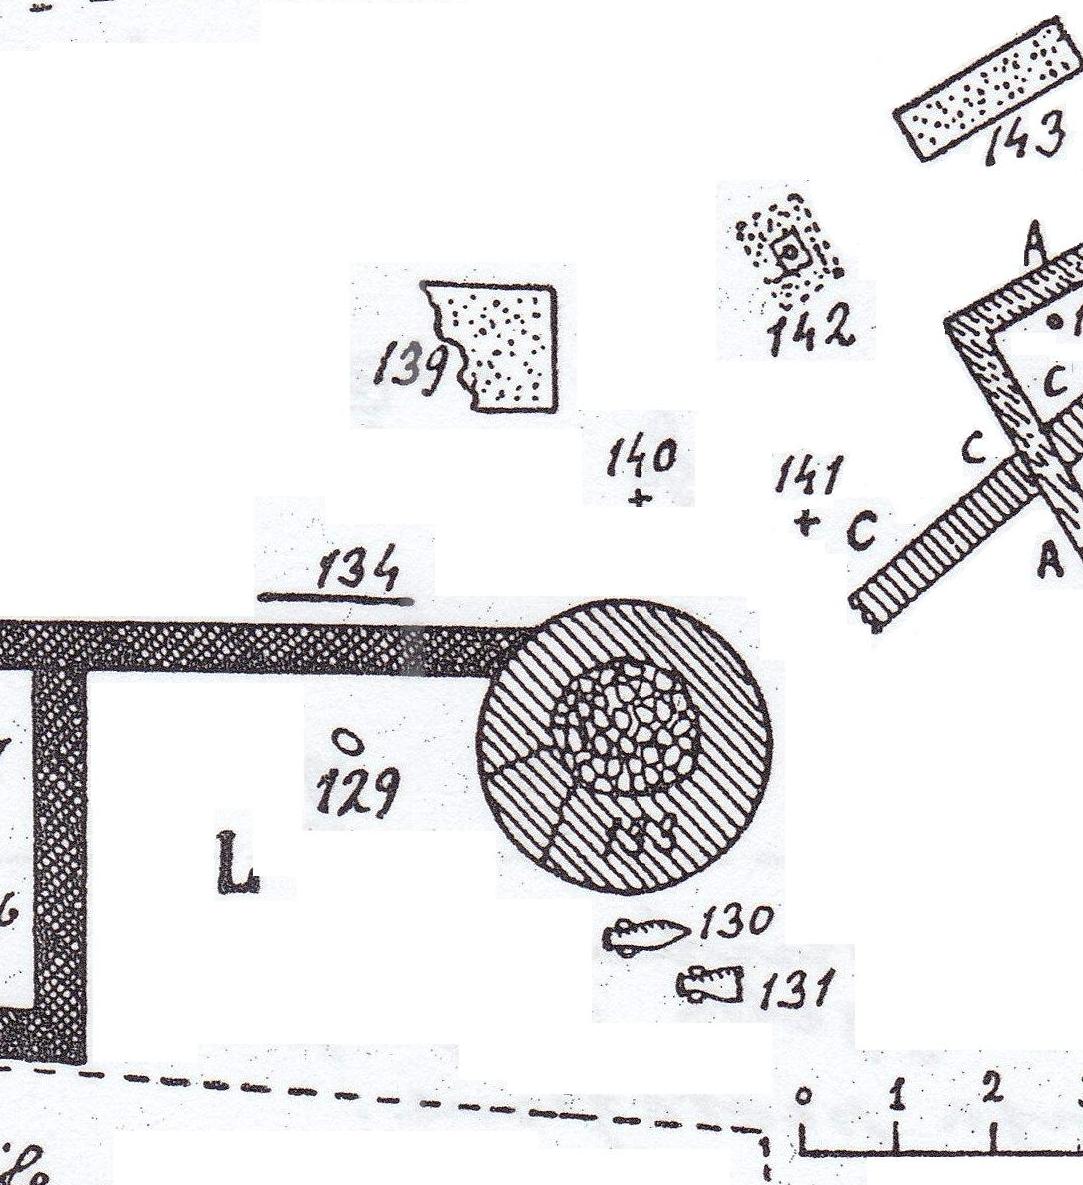 Necropoli di Albintimilium, recinto L, tomba 131 (tomba a enchytrismos, area ad uso funerario) - Ventimiglia (IM)  (fine/ inizio Età romana imperiale)